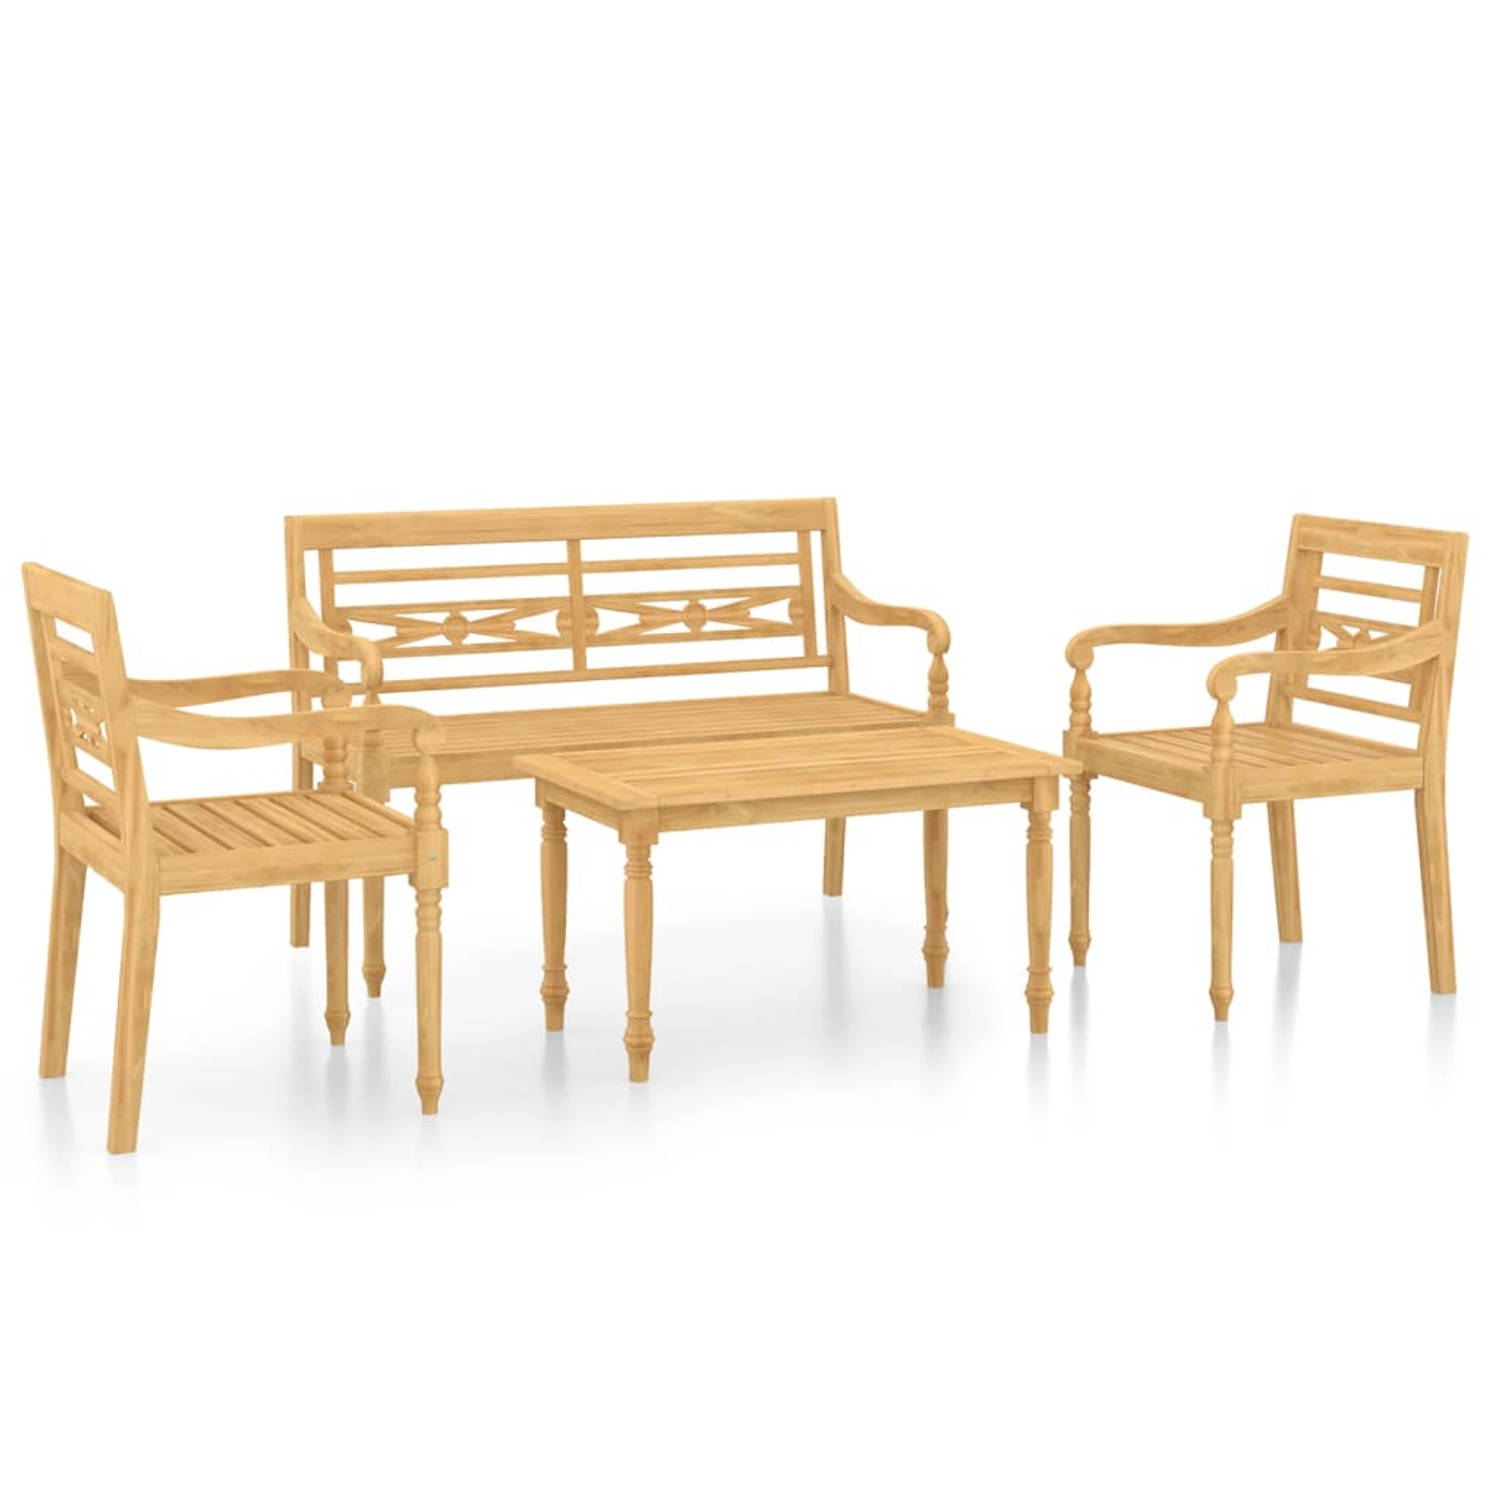 The Living Store Loungeset Teakhout - Compact en comfortabel - Hardhouten meubel - Weerbestendig - Afmeting tafel- 90 x 50 x 45 cm - Afmeting stoel- 55 x 51.5 x 84 cm - Afmeting ba